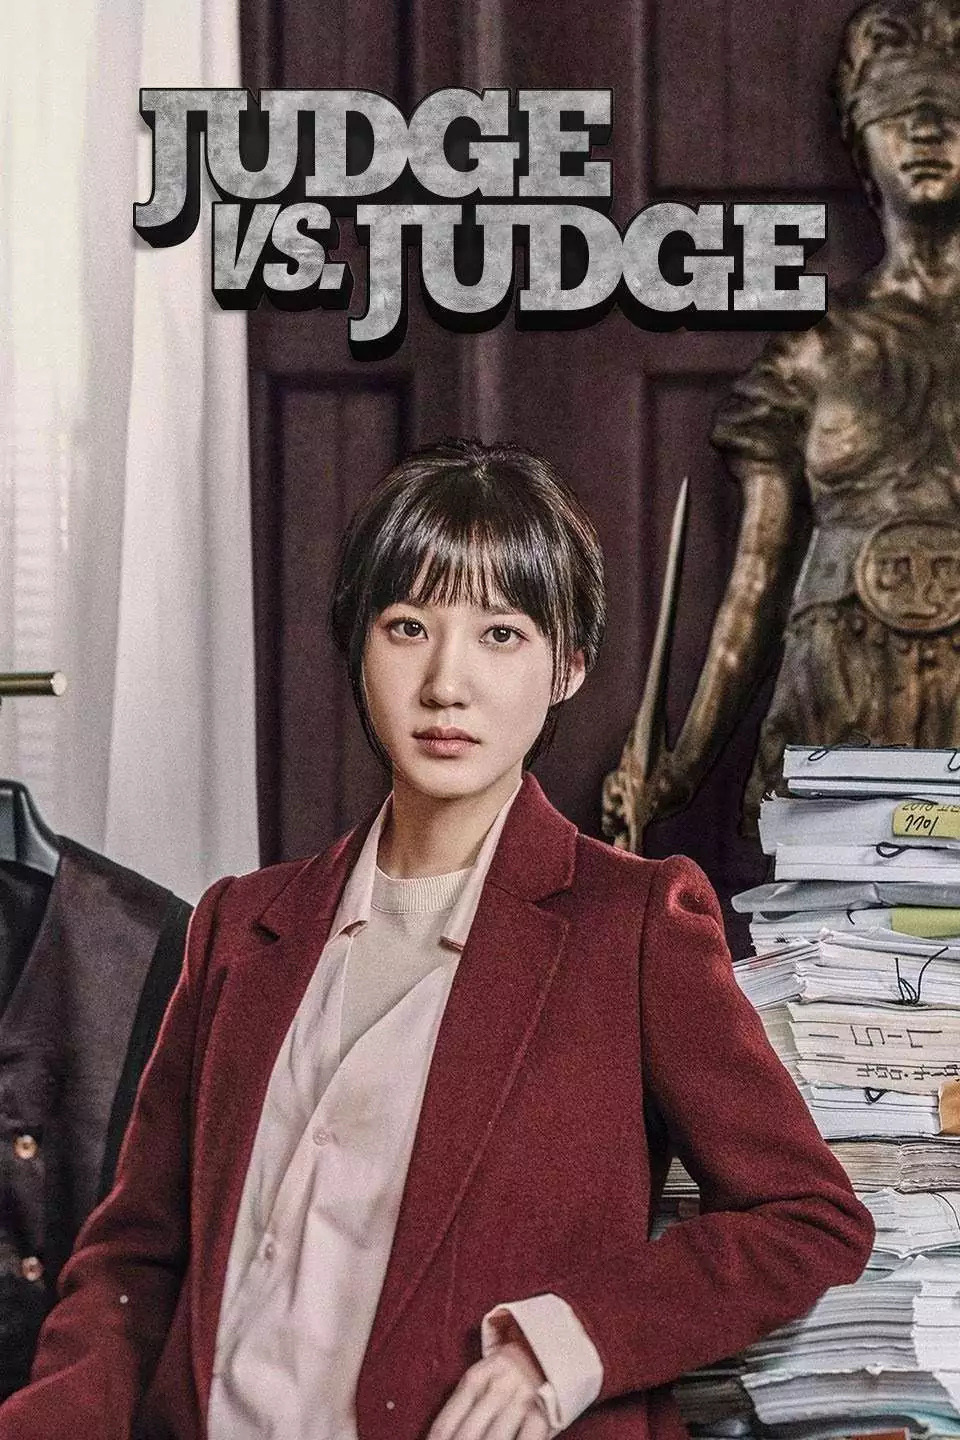 Judge vs Judge Posters 2017